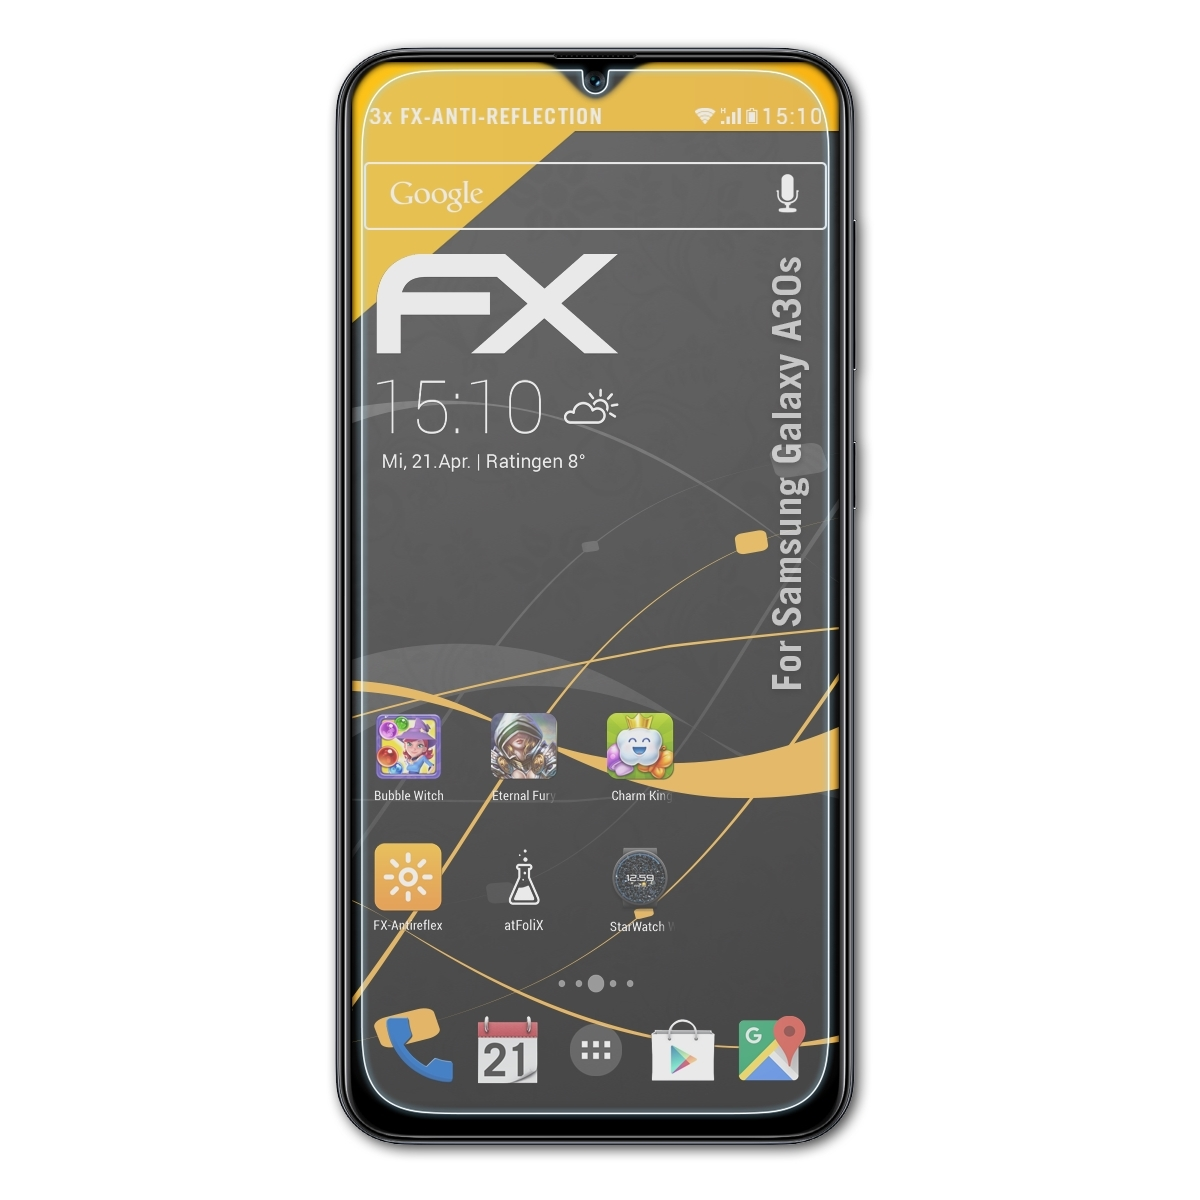 3x A30s) ATFOLIX Displayschutz(für Galaxy Samsung FX-Antireflex